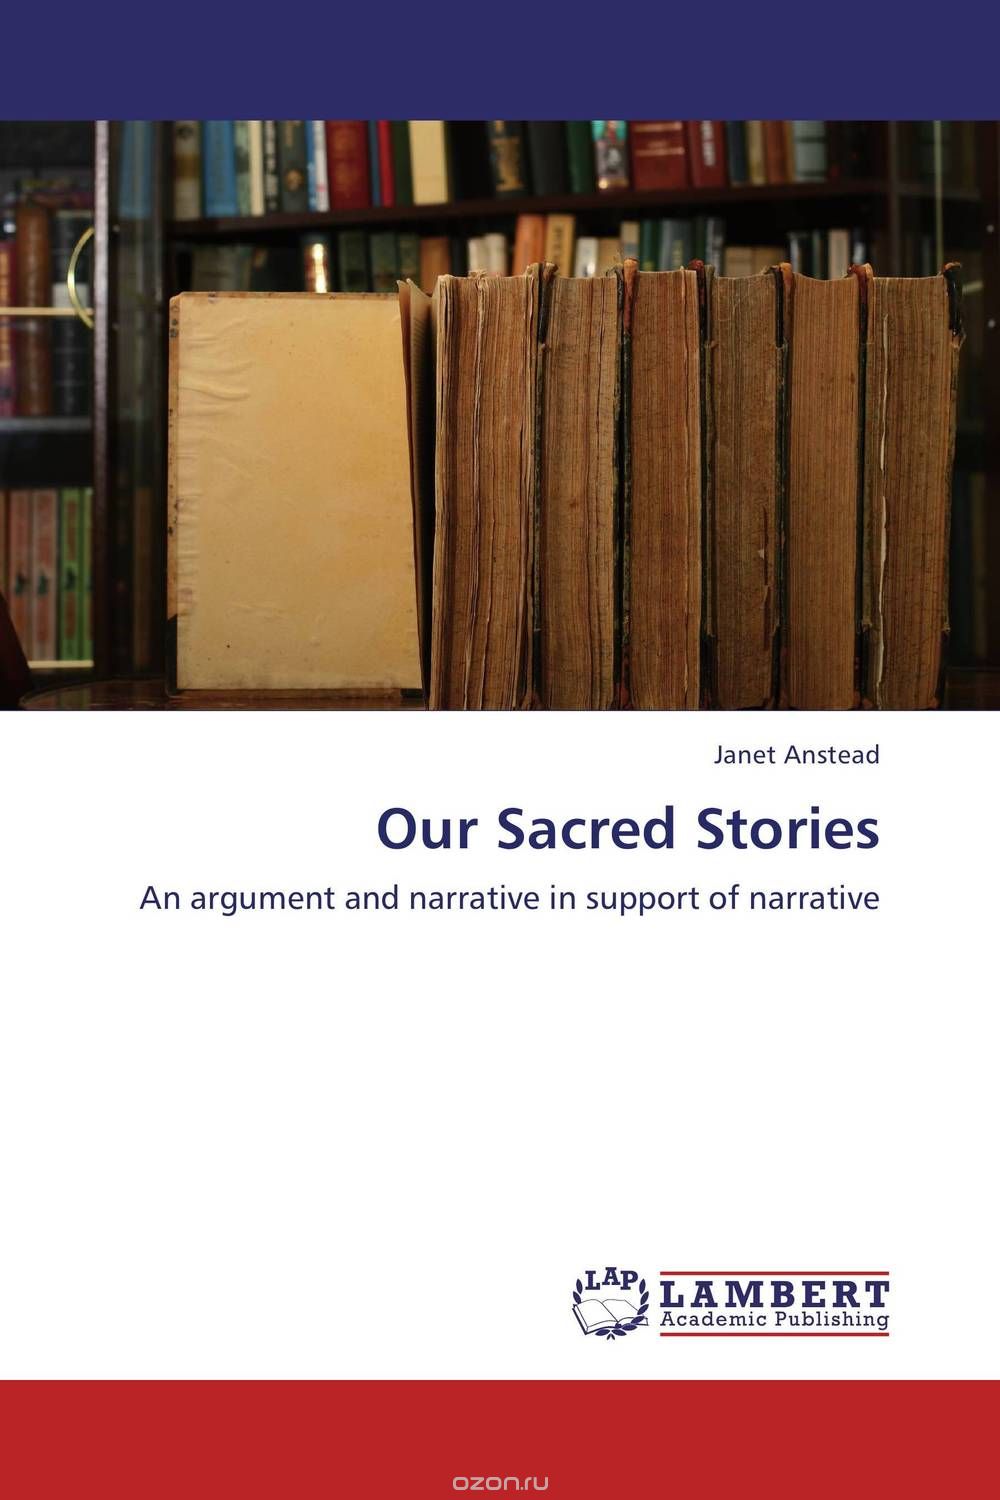 Скачать книгу "Our Sacred Stories"